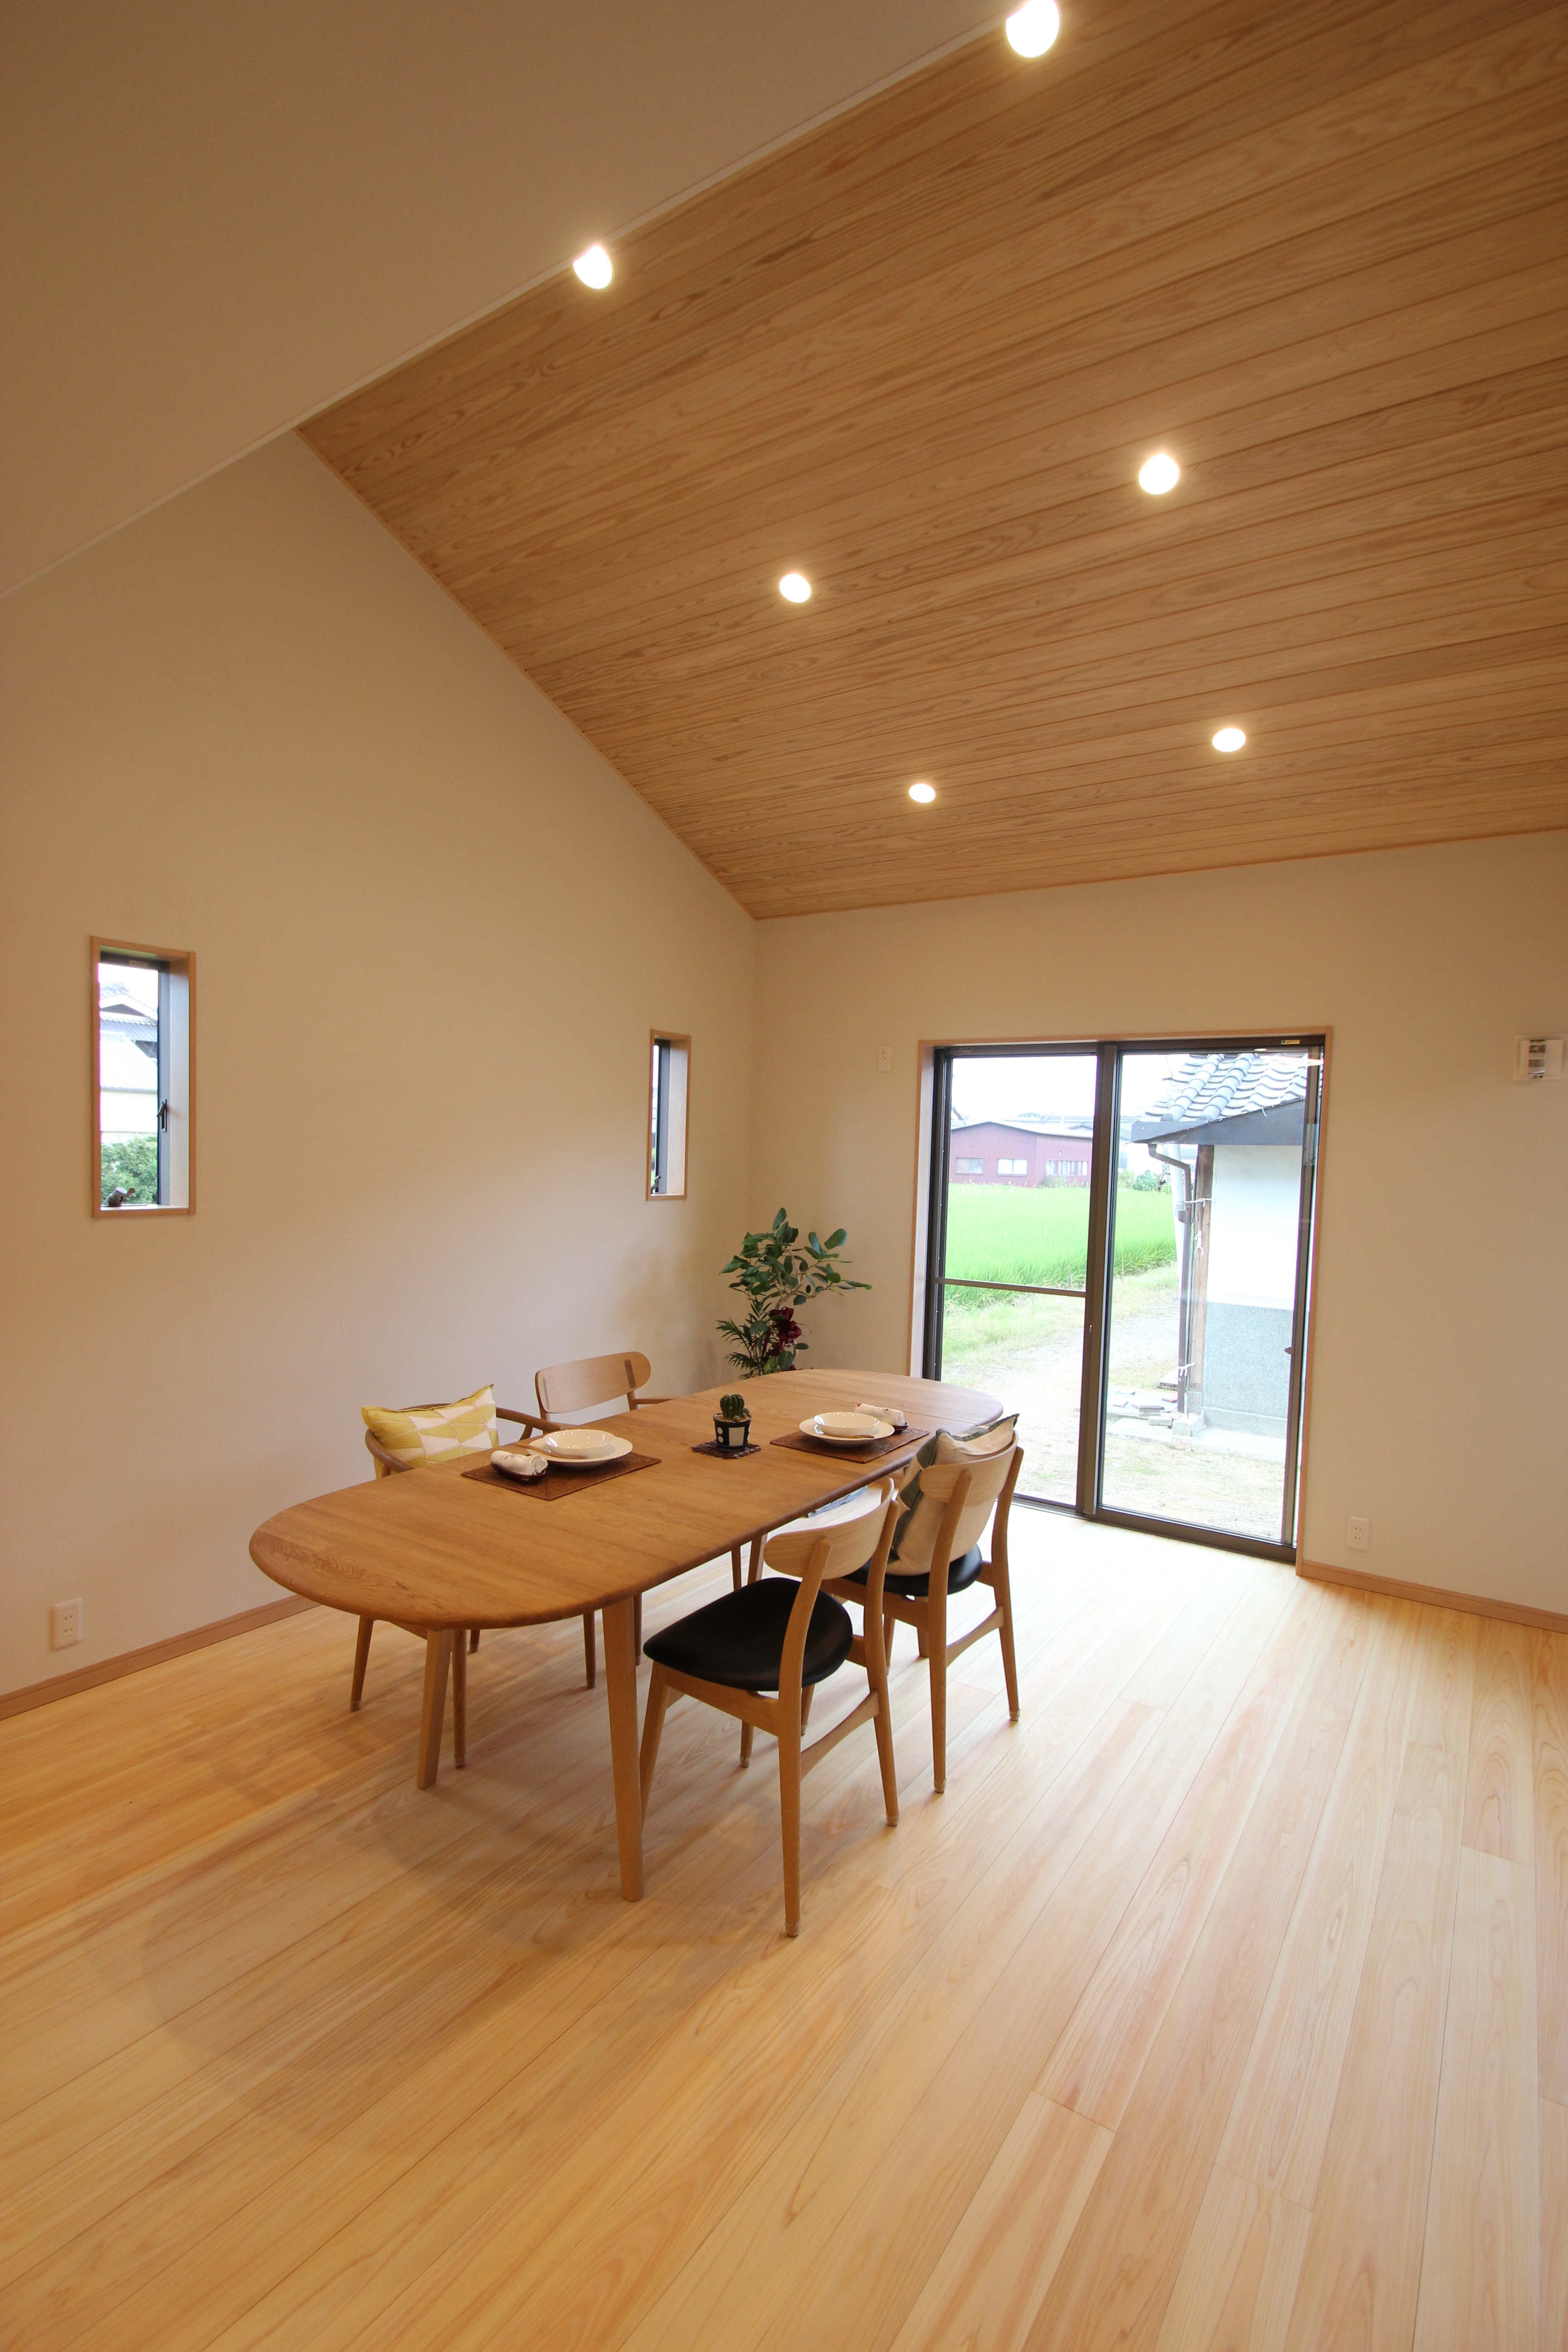 奈良で注文住宅の木の家リビングなら平野木材